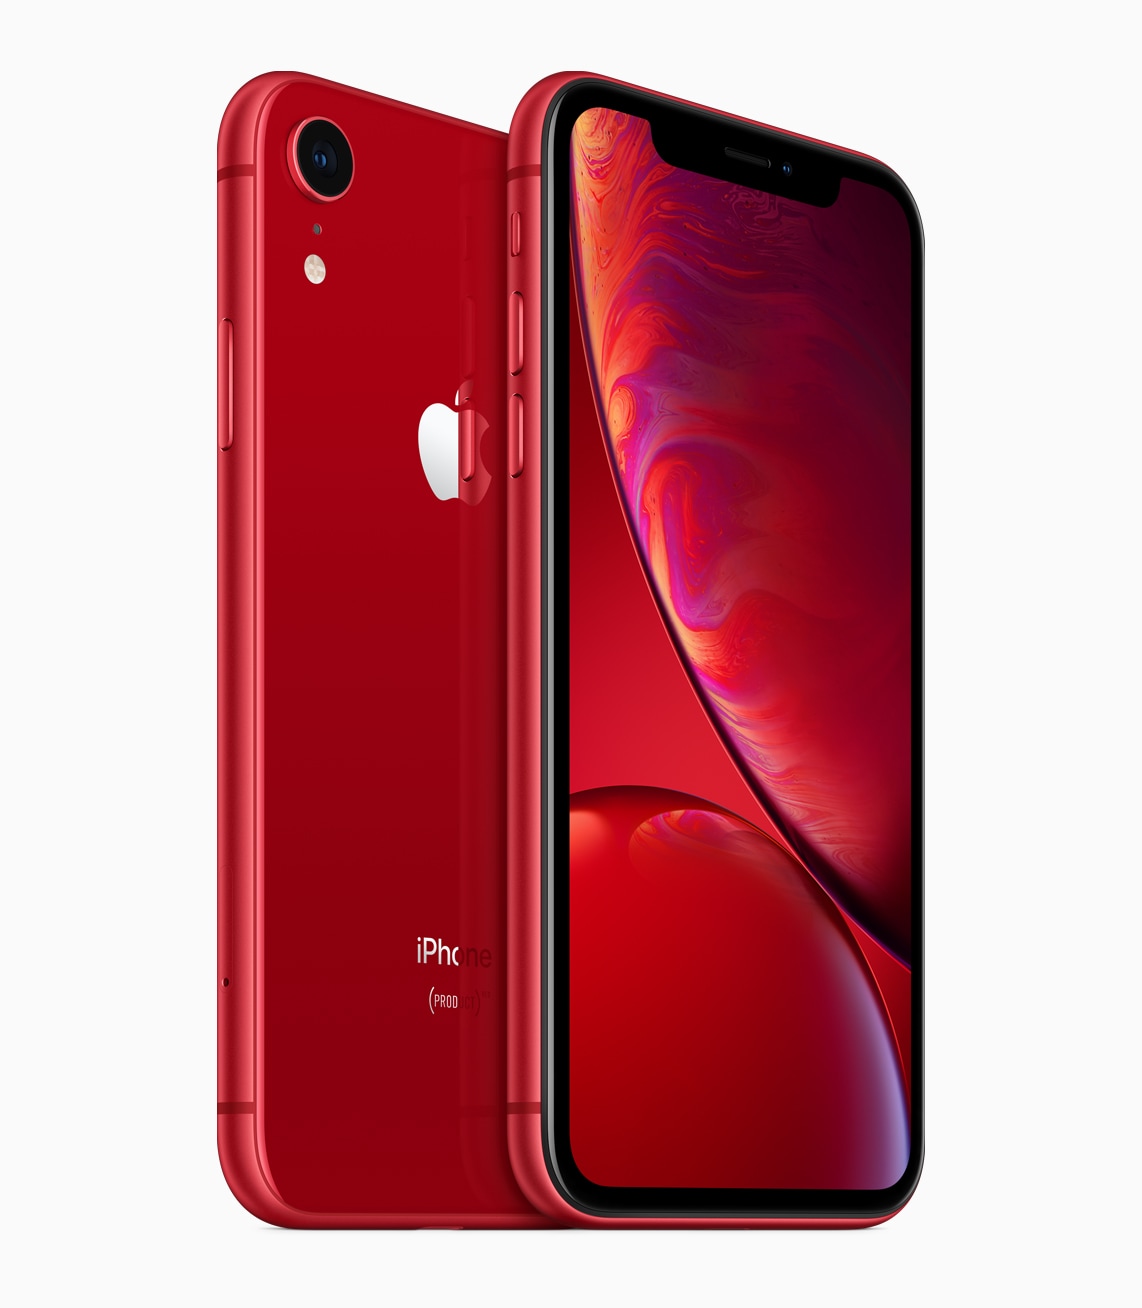 iPhone Xr vermelho de frente e de trás, série (PRODUCT)RED